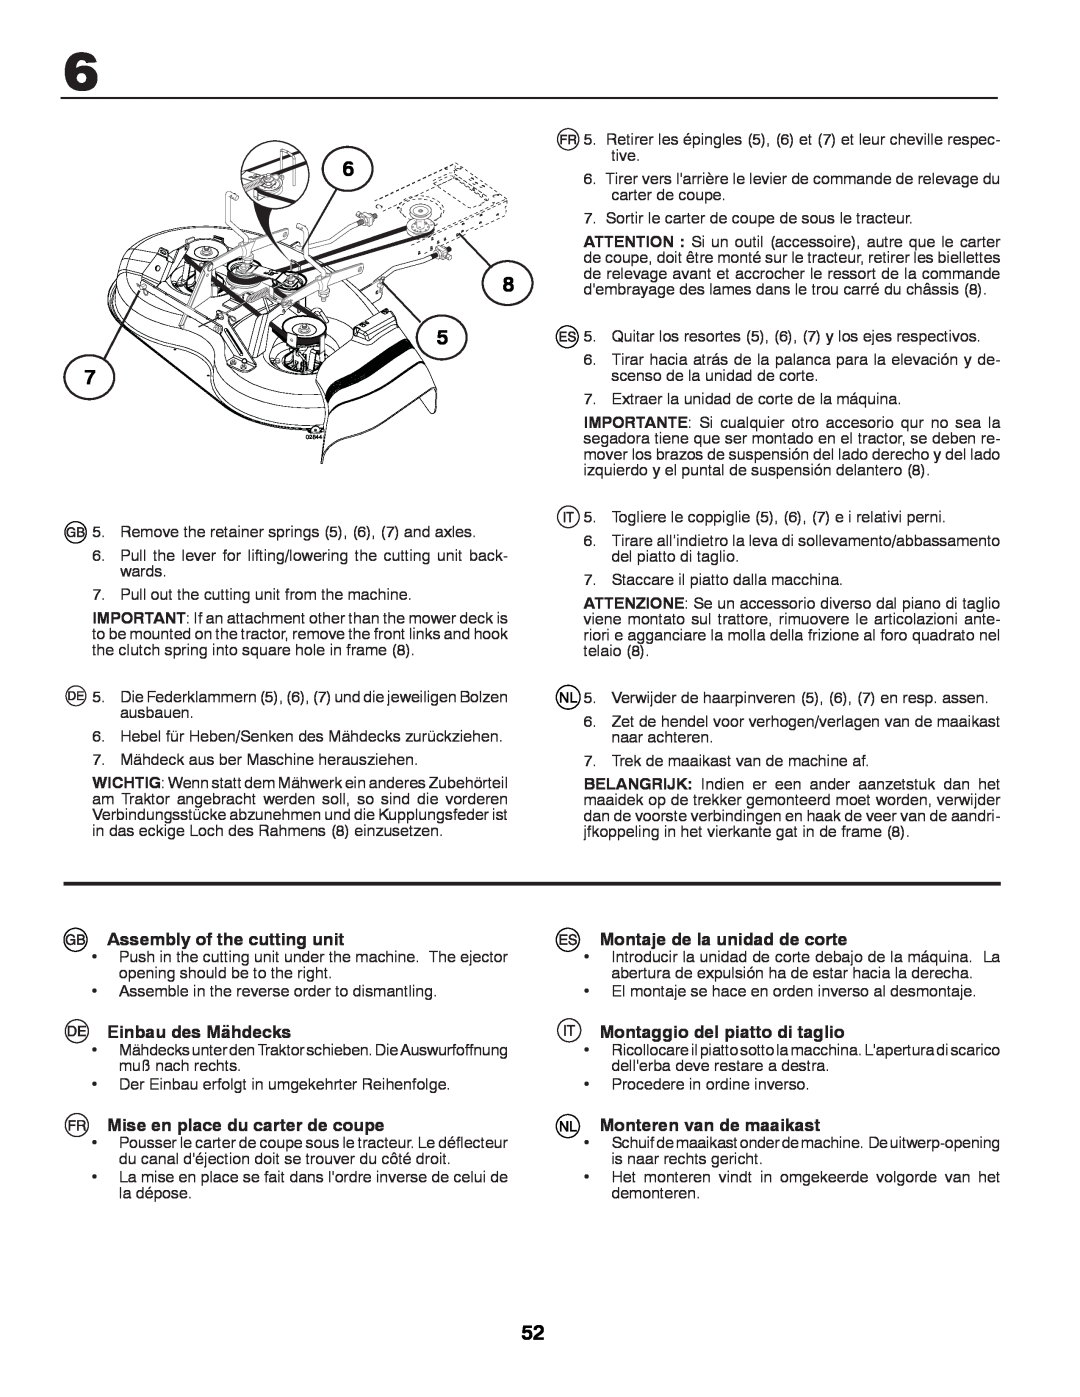 Husqvarna LT131 instruction manual Assembly of the cutting unit, Einbau des Mähdecks, Mise en place du carter de coupe 